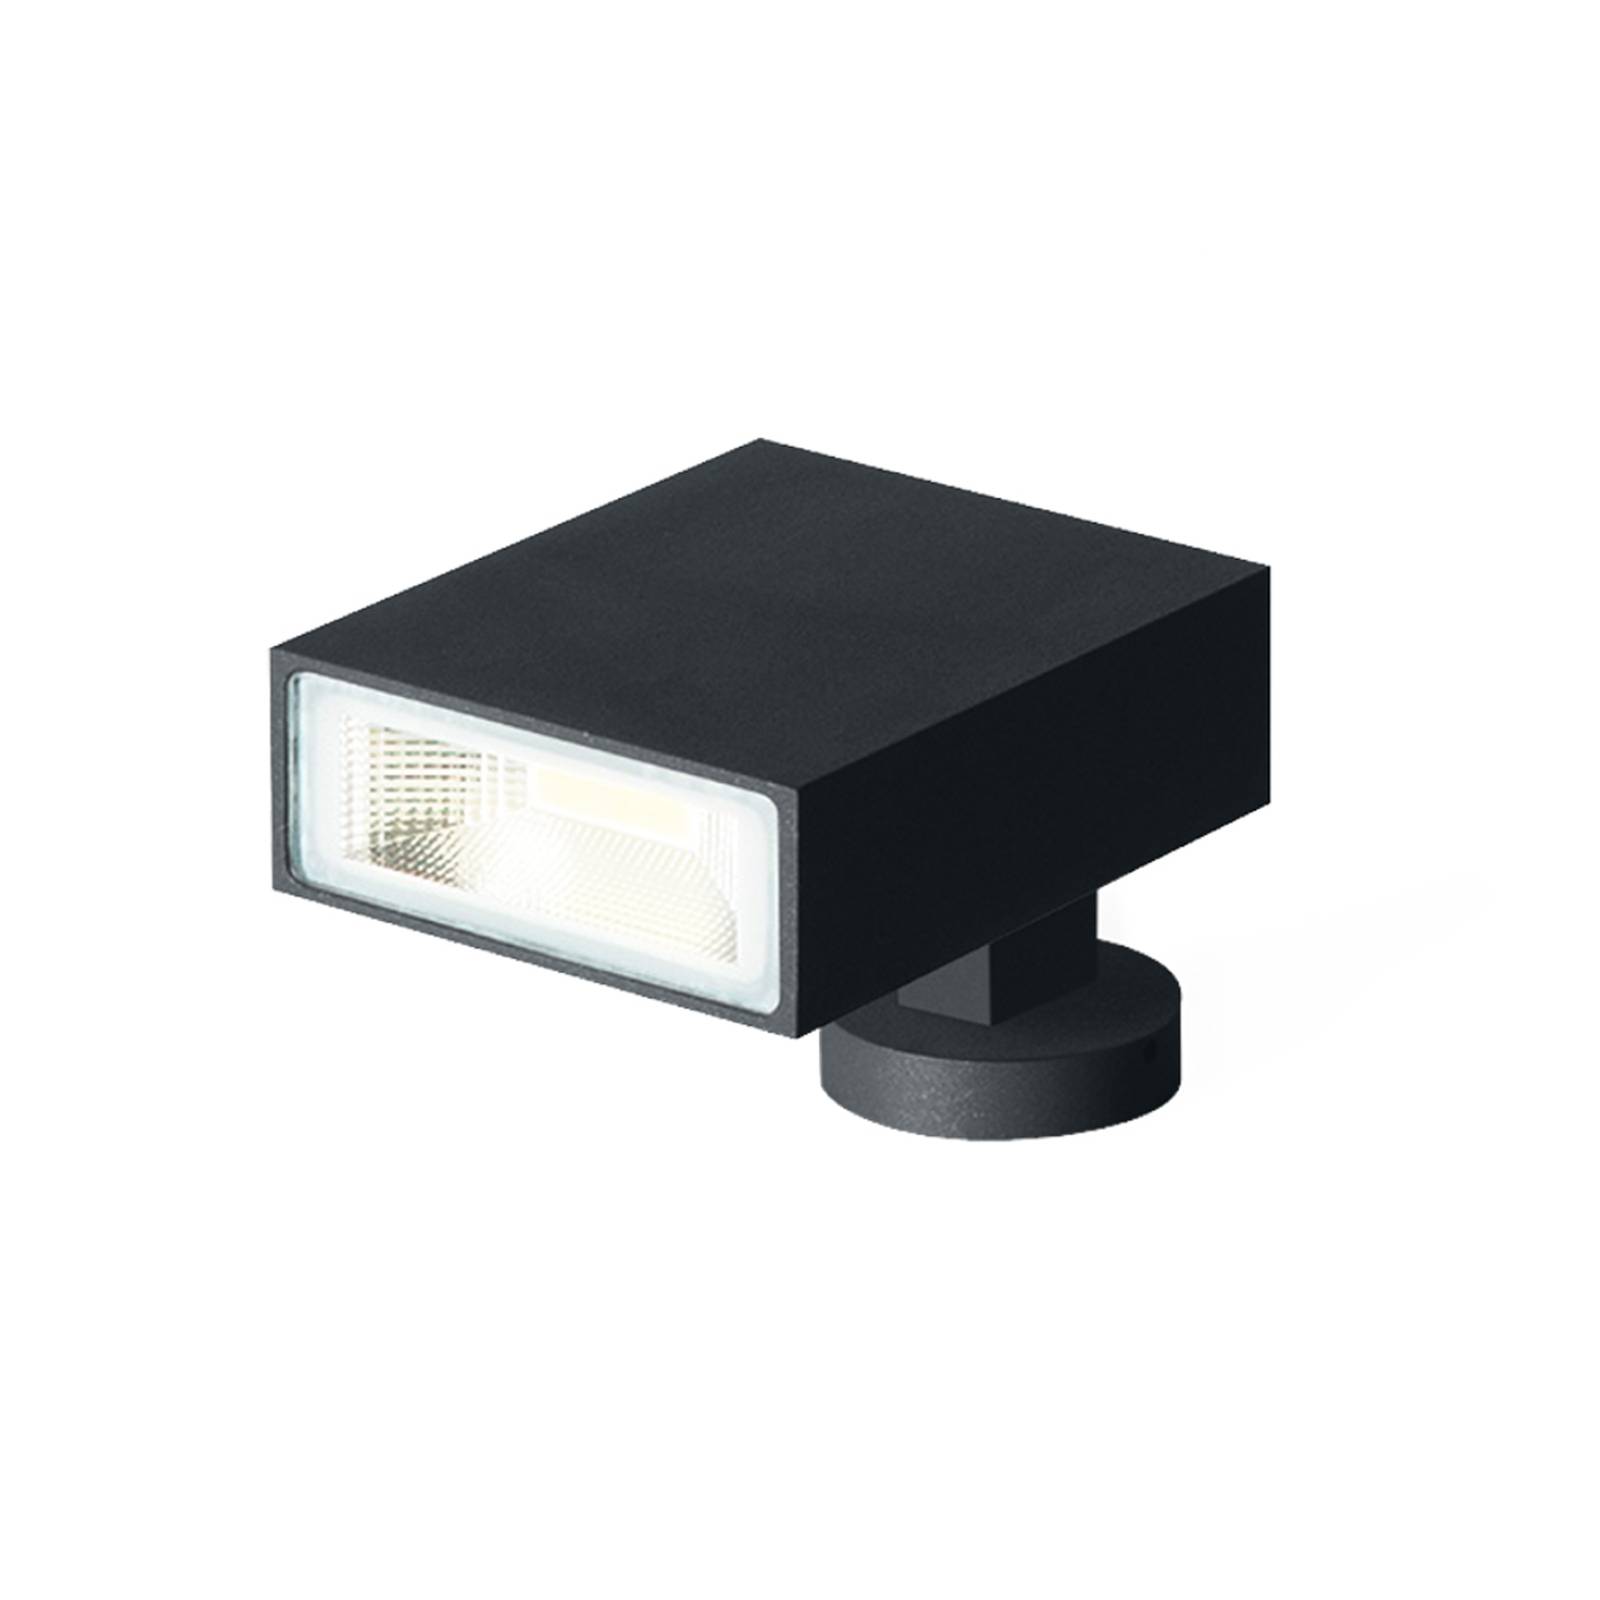 Wever & Ducré Lighting WEVER & DUCRÉ Stake 1.0 utomhus LED-spot svart